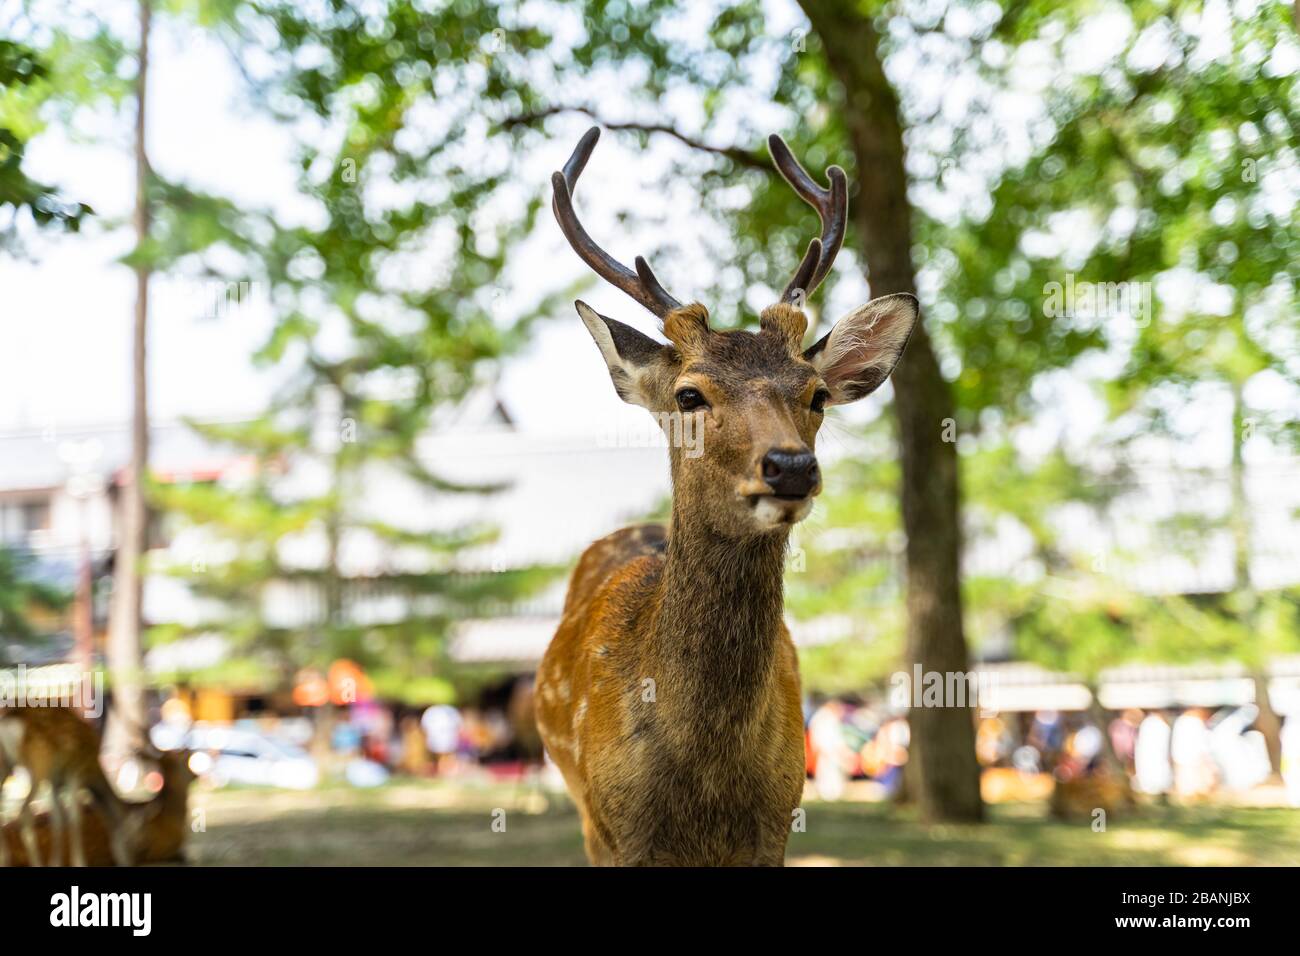 A deer posing in front of camera at Nara Park, Japan Stock Photo